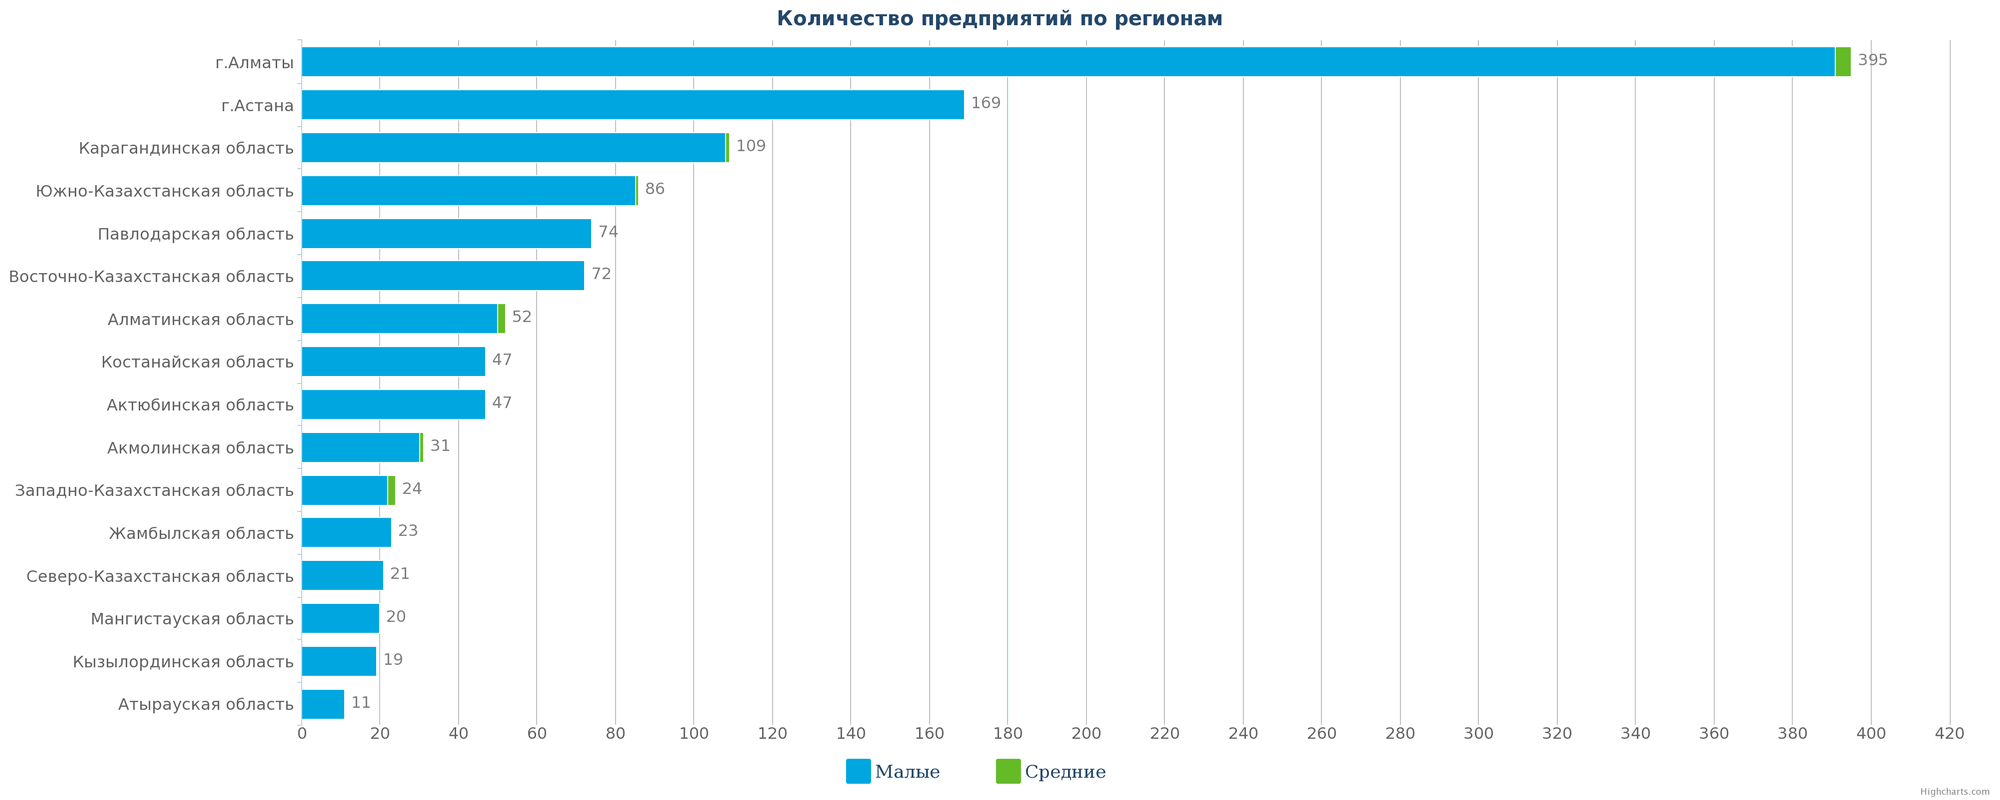 Количество мебельных компаний Казахстана по регионам на 13.03.2017